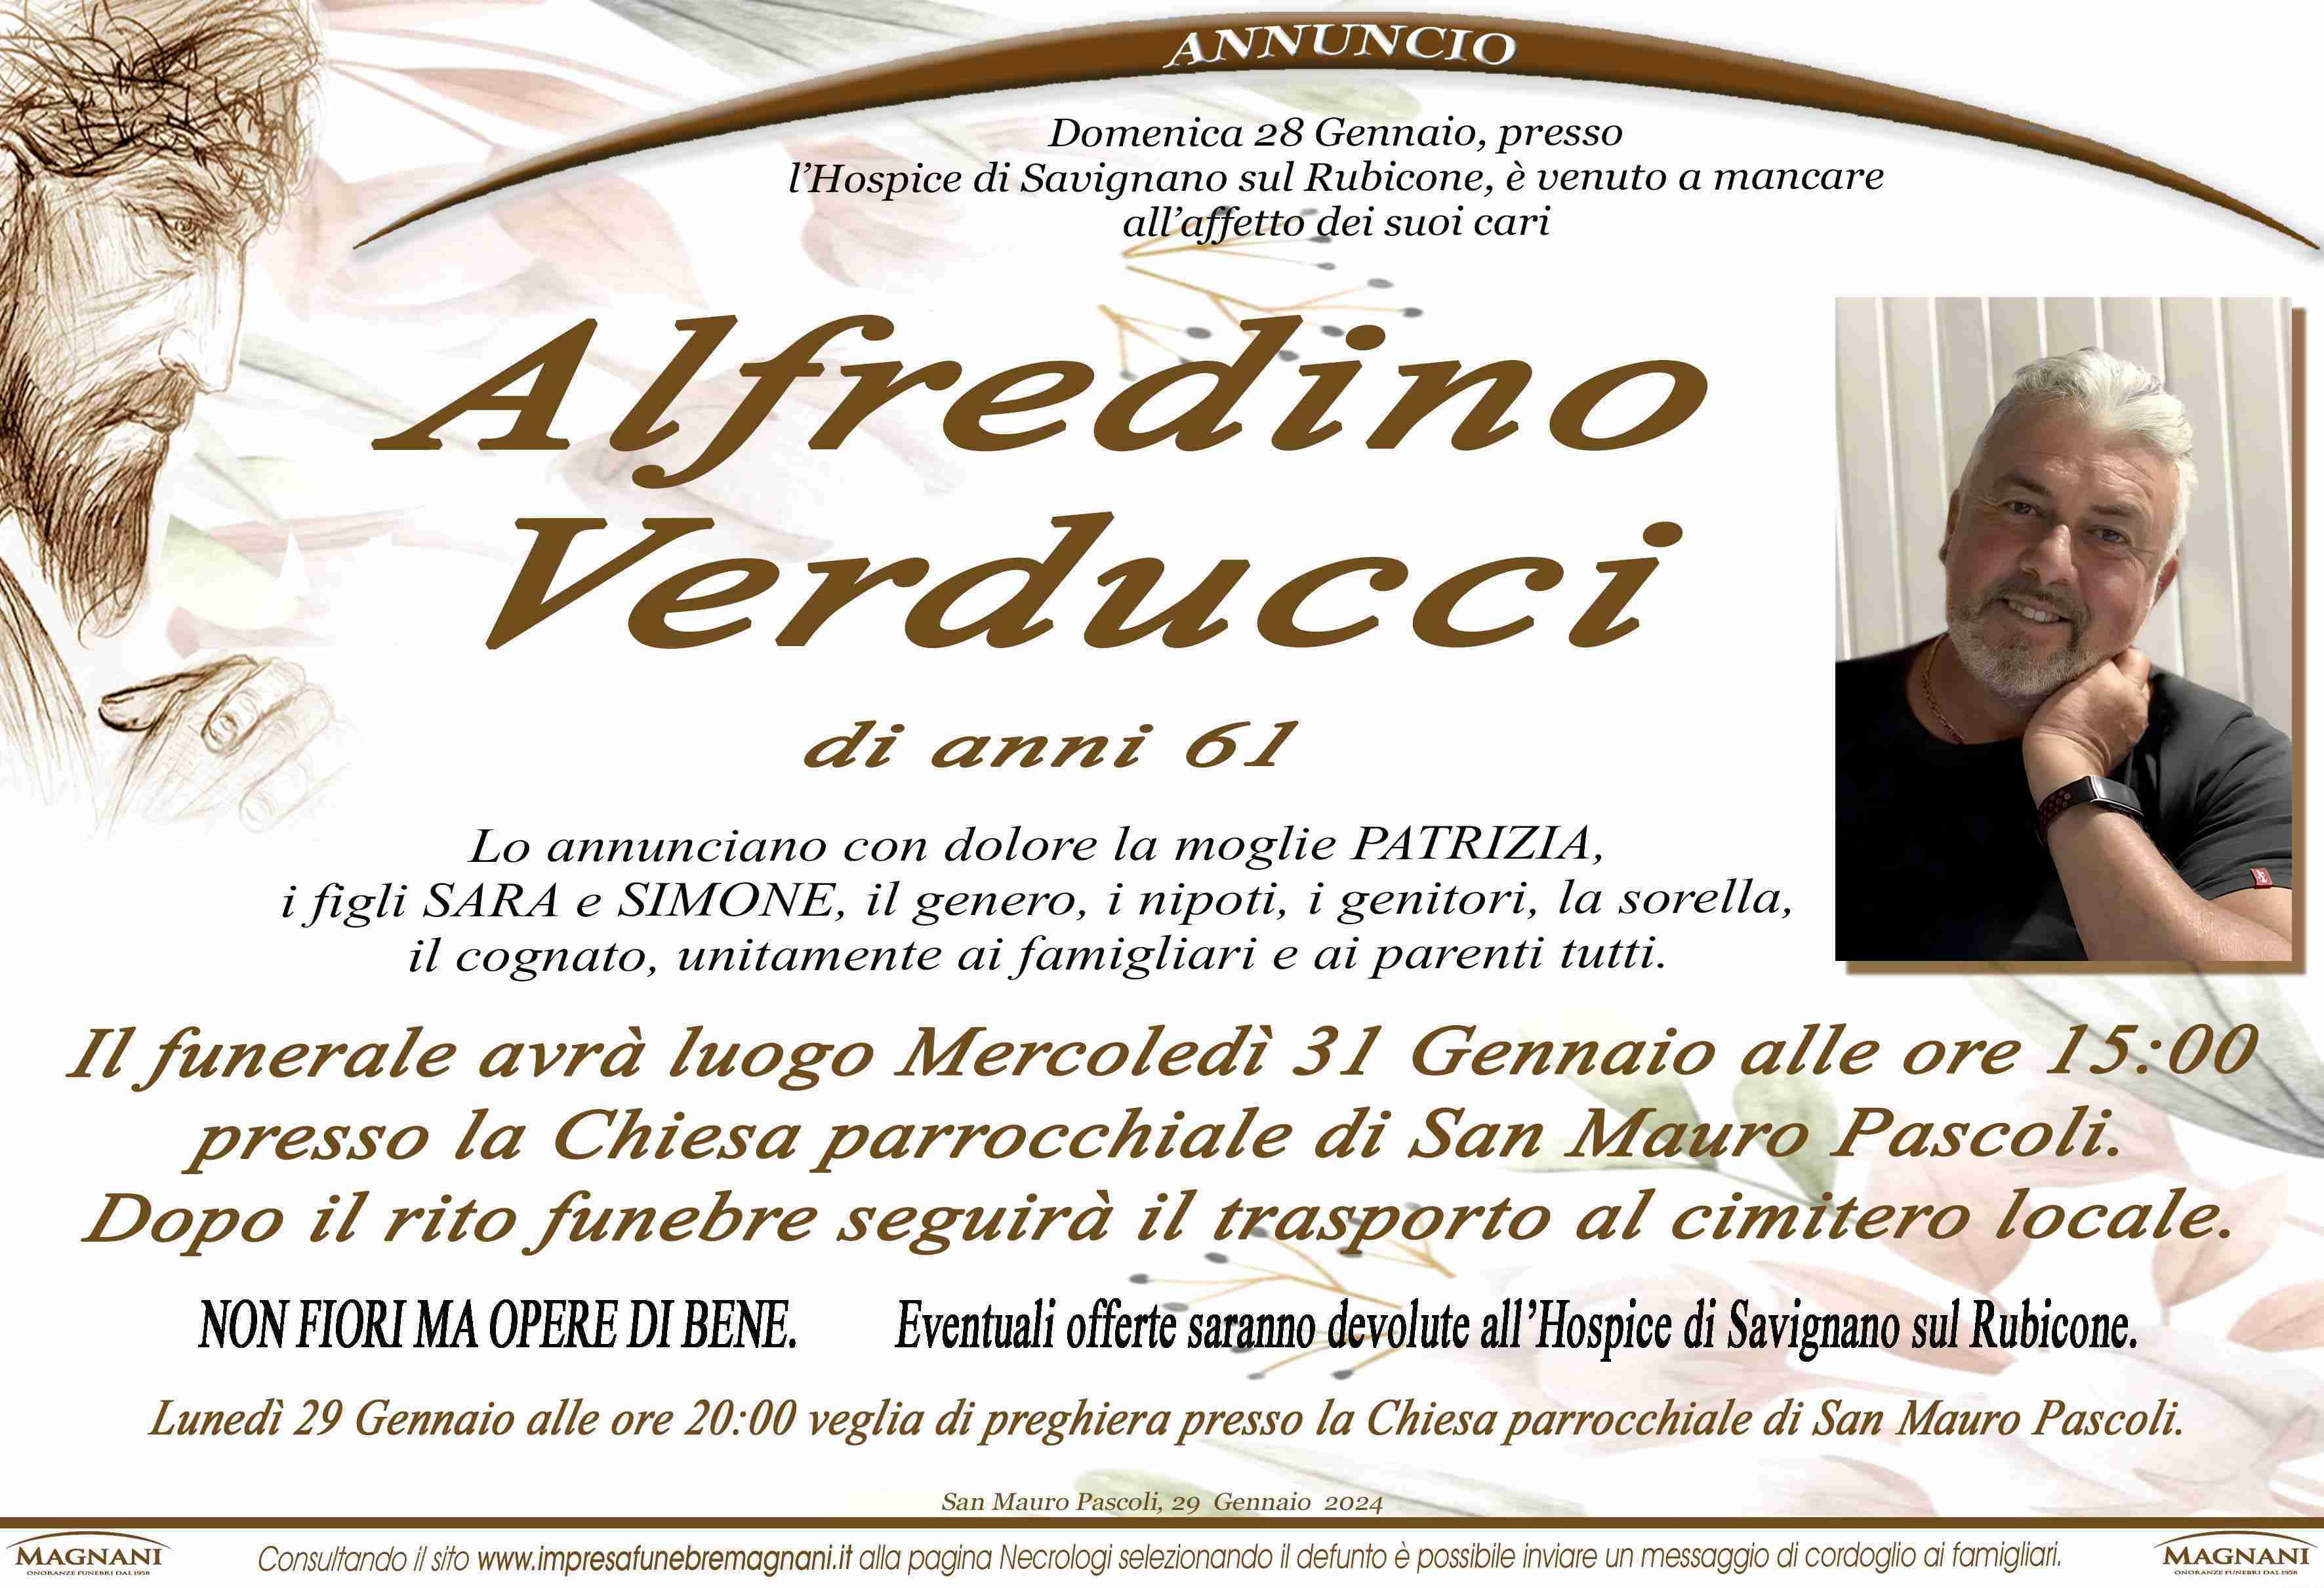 Alfredino Verducci